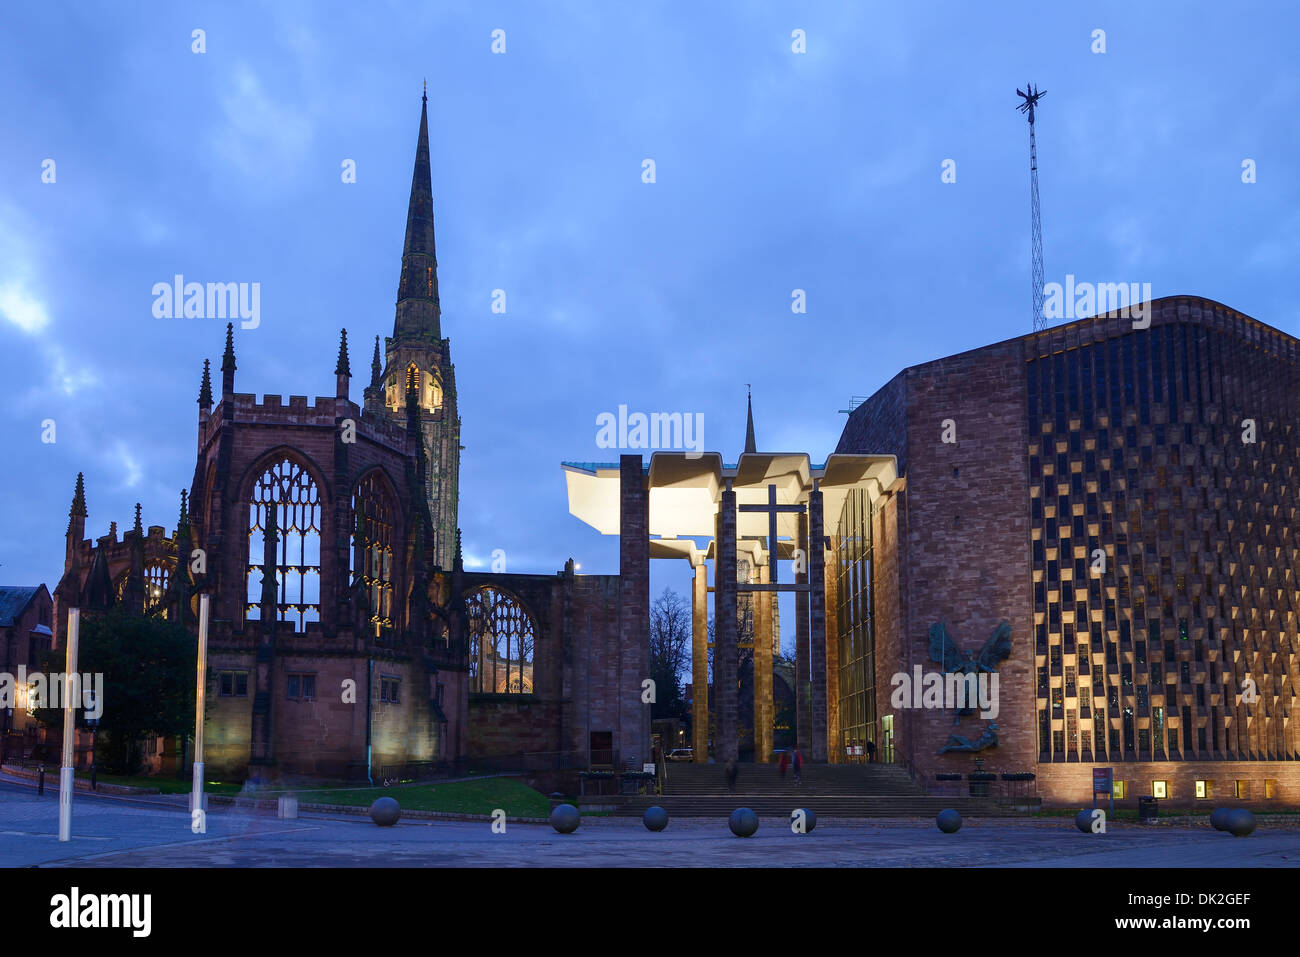 L'ancienne cathédrale de Coventry aux côtés de la nouvelle cathédrale au crépuscule Banque D'Images